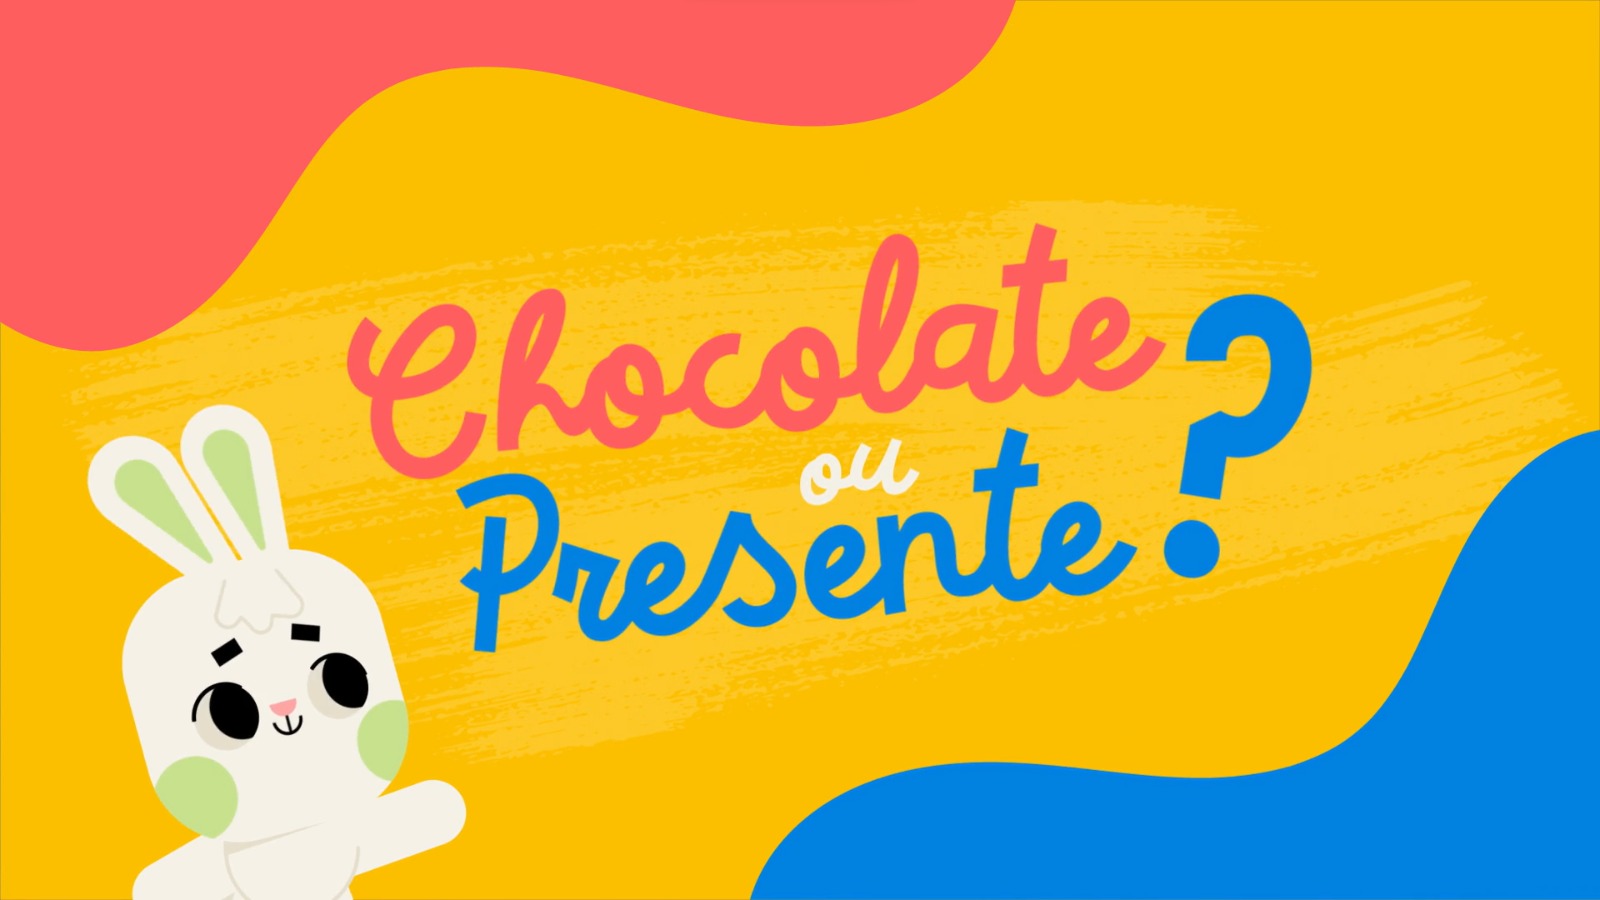 Campanha "Chocolate ou Presente?"